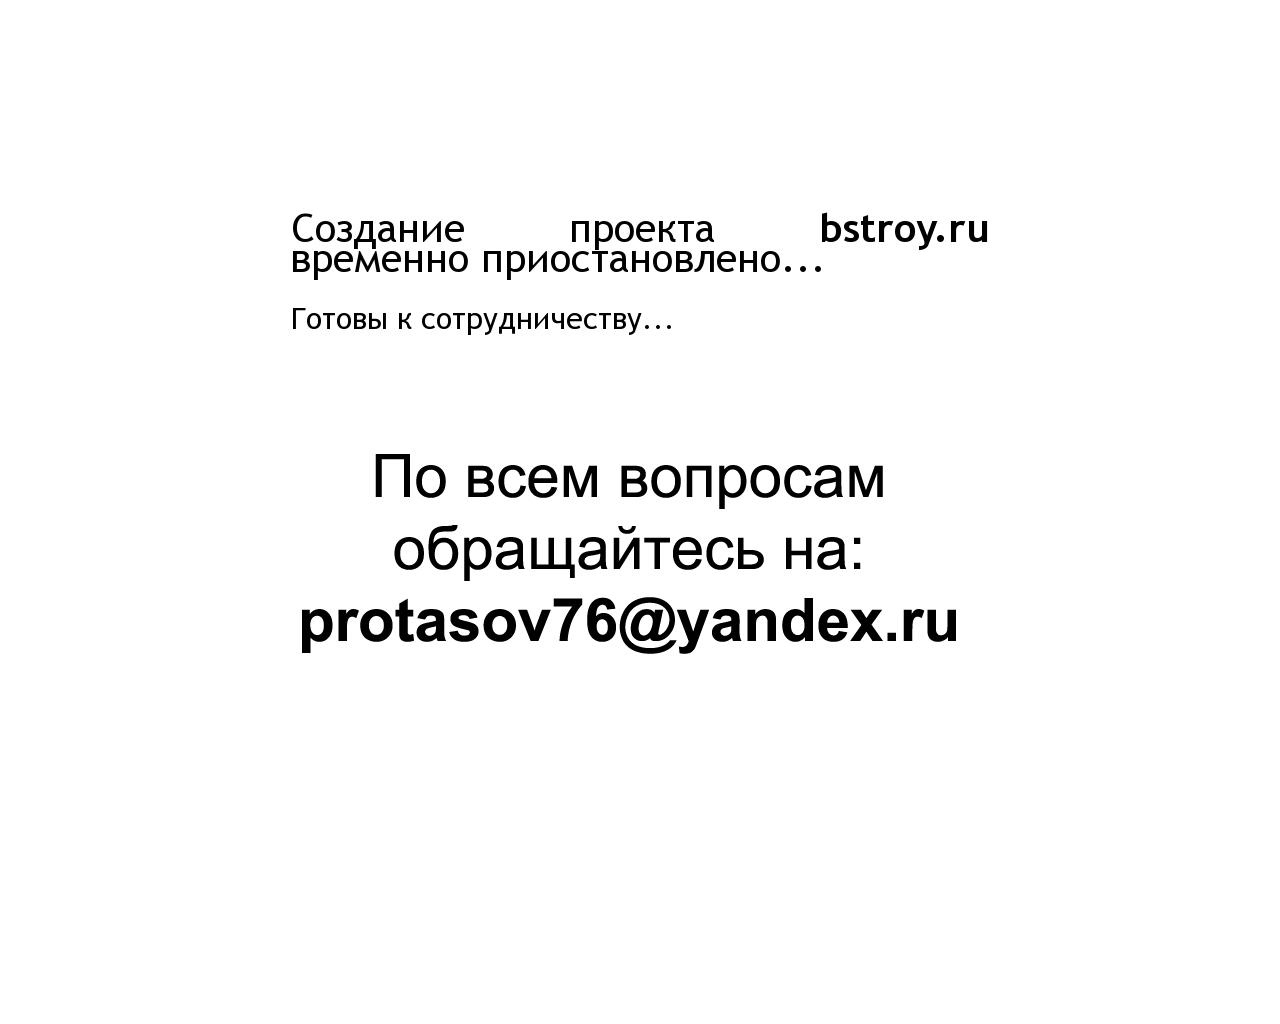 Изображение сайта bstroy.ru в разрешении 1280x1024